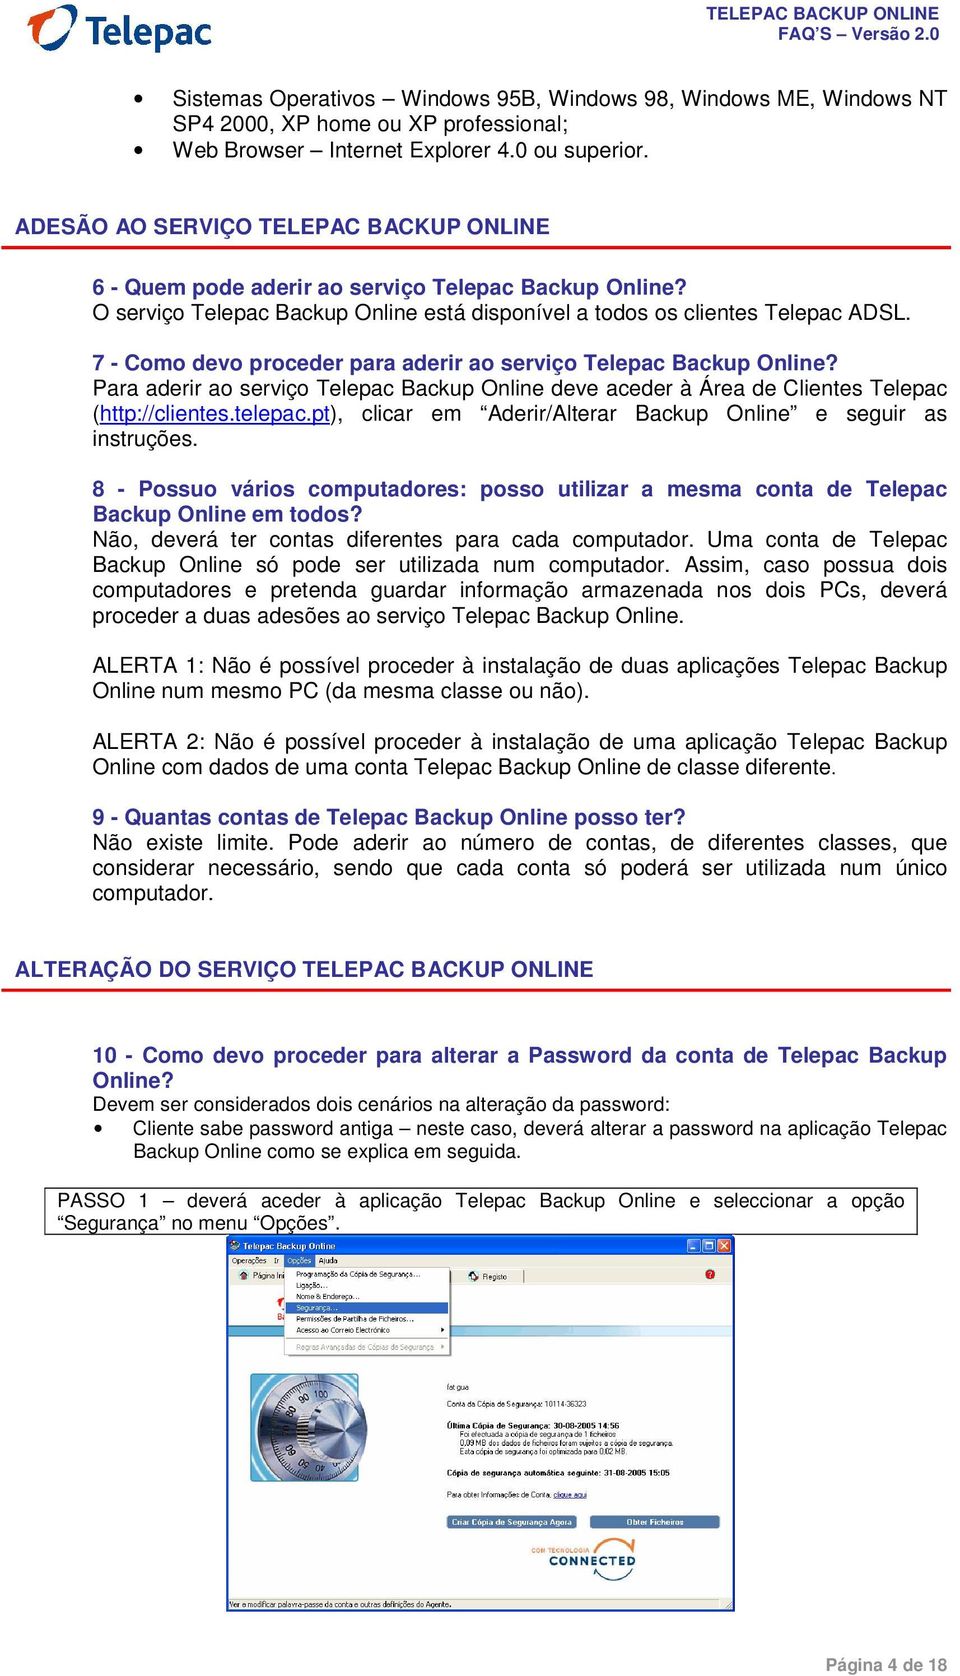 7 - Como devo proceder para aderir ao serviço Telepac Backup Online? Para aderir ao serviço Telepac Backup Online deve aceder à Área de Clientes Telepac (http://clientes.telepac.